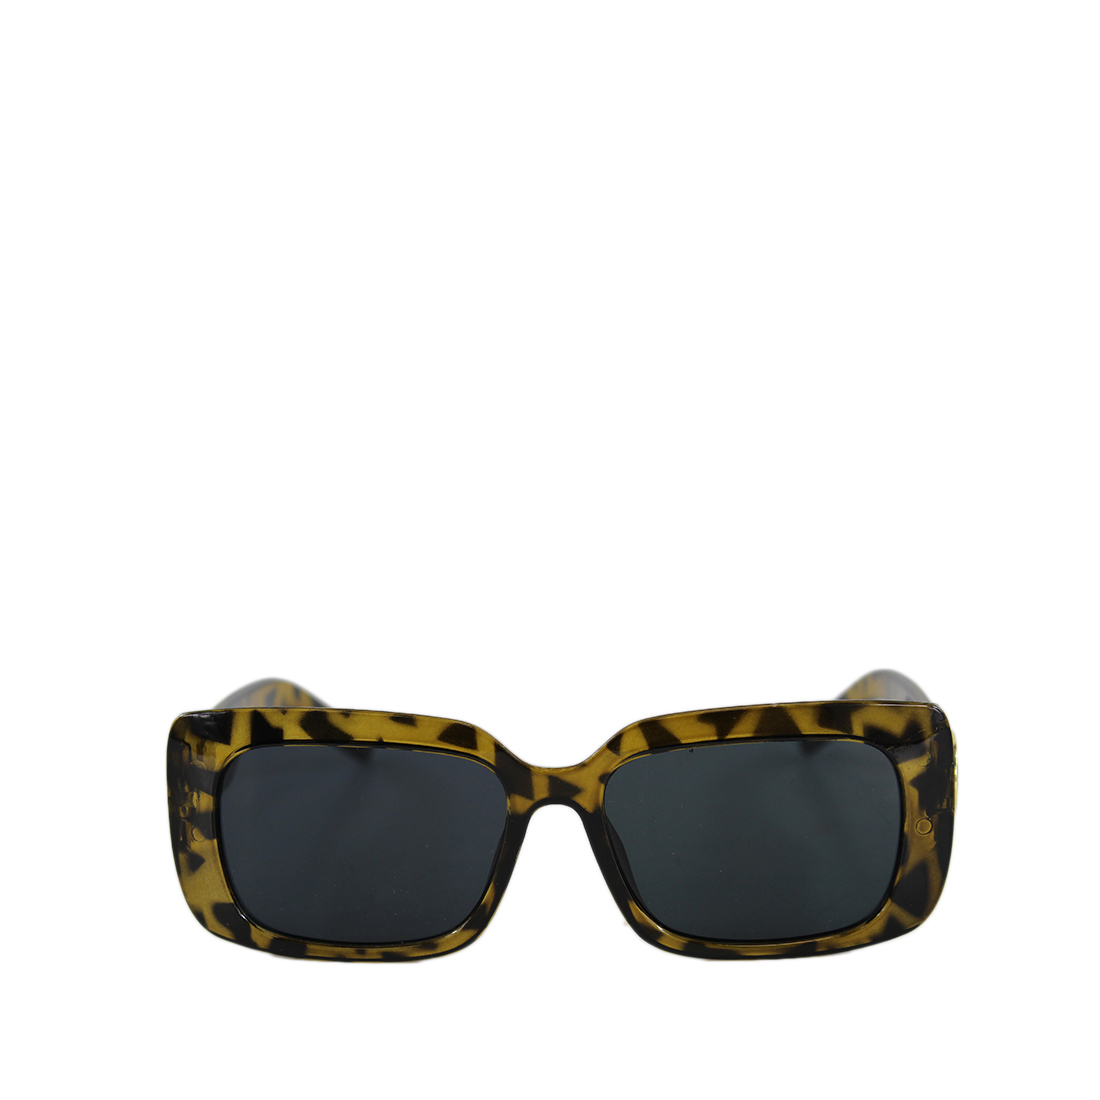 * Mid square sunglasses design